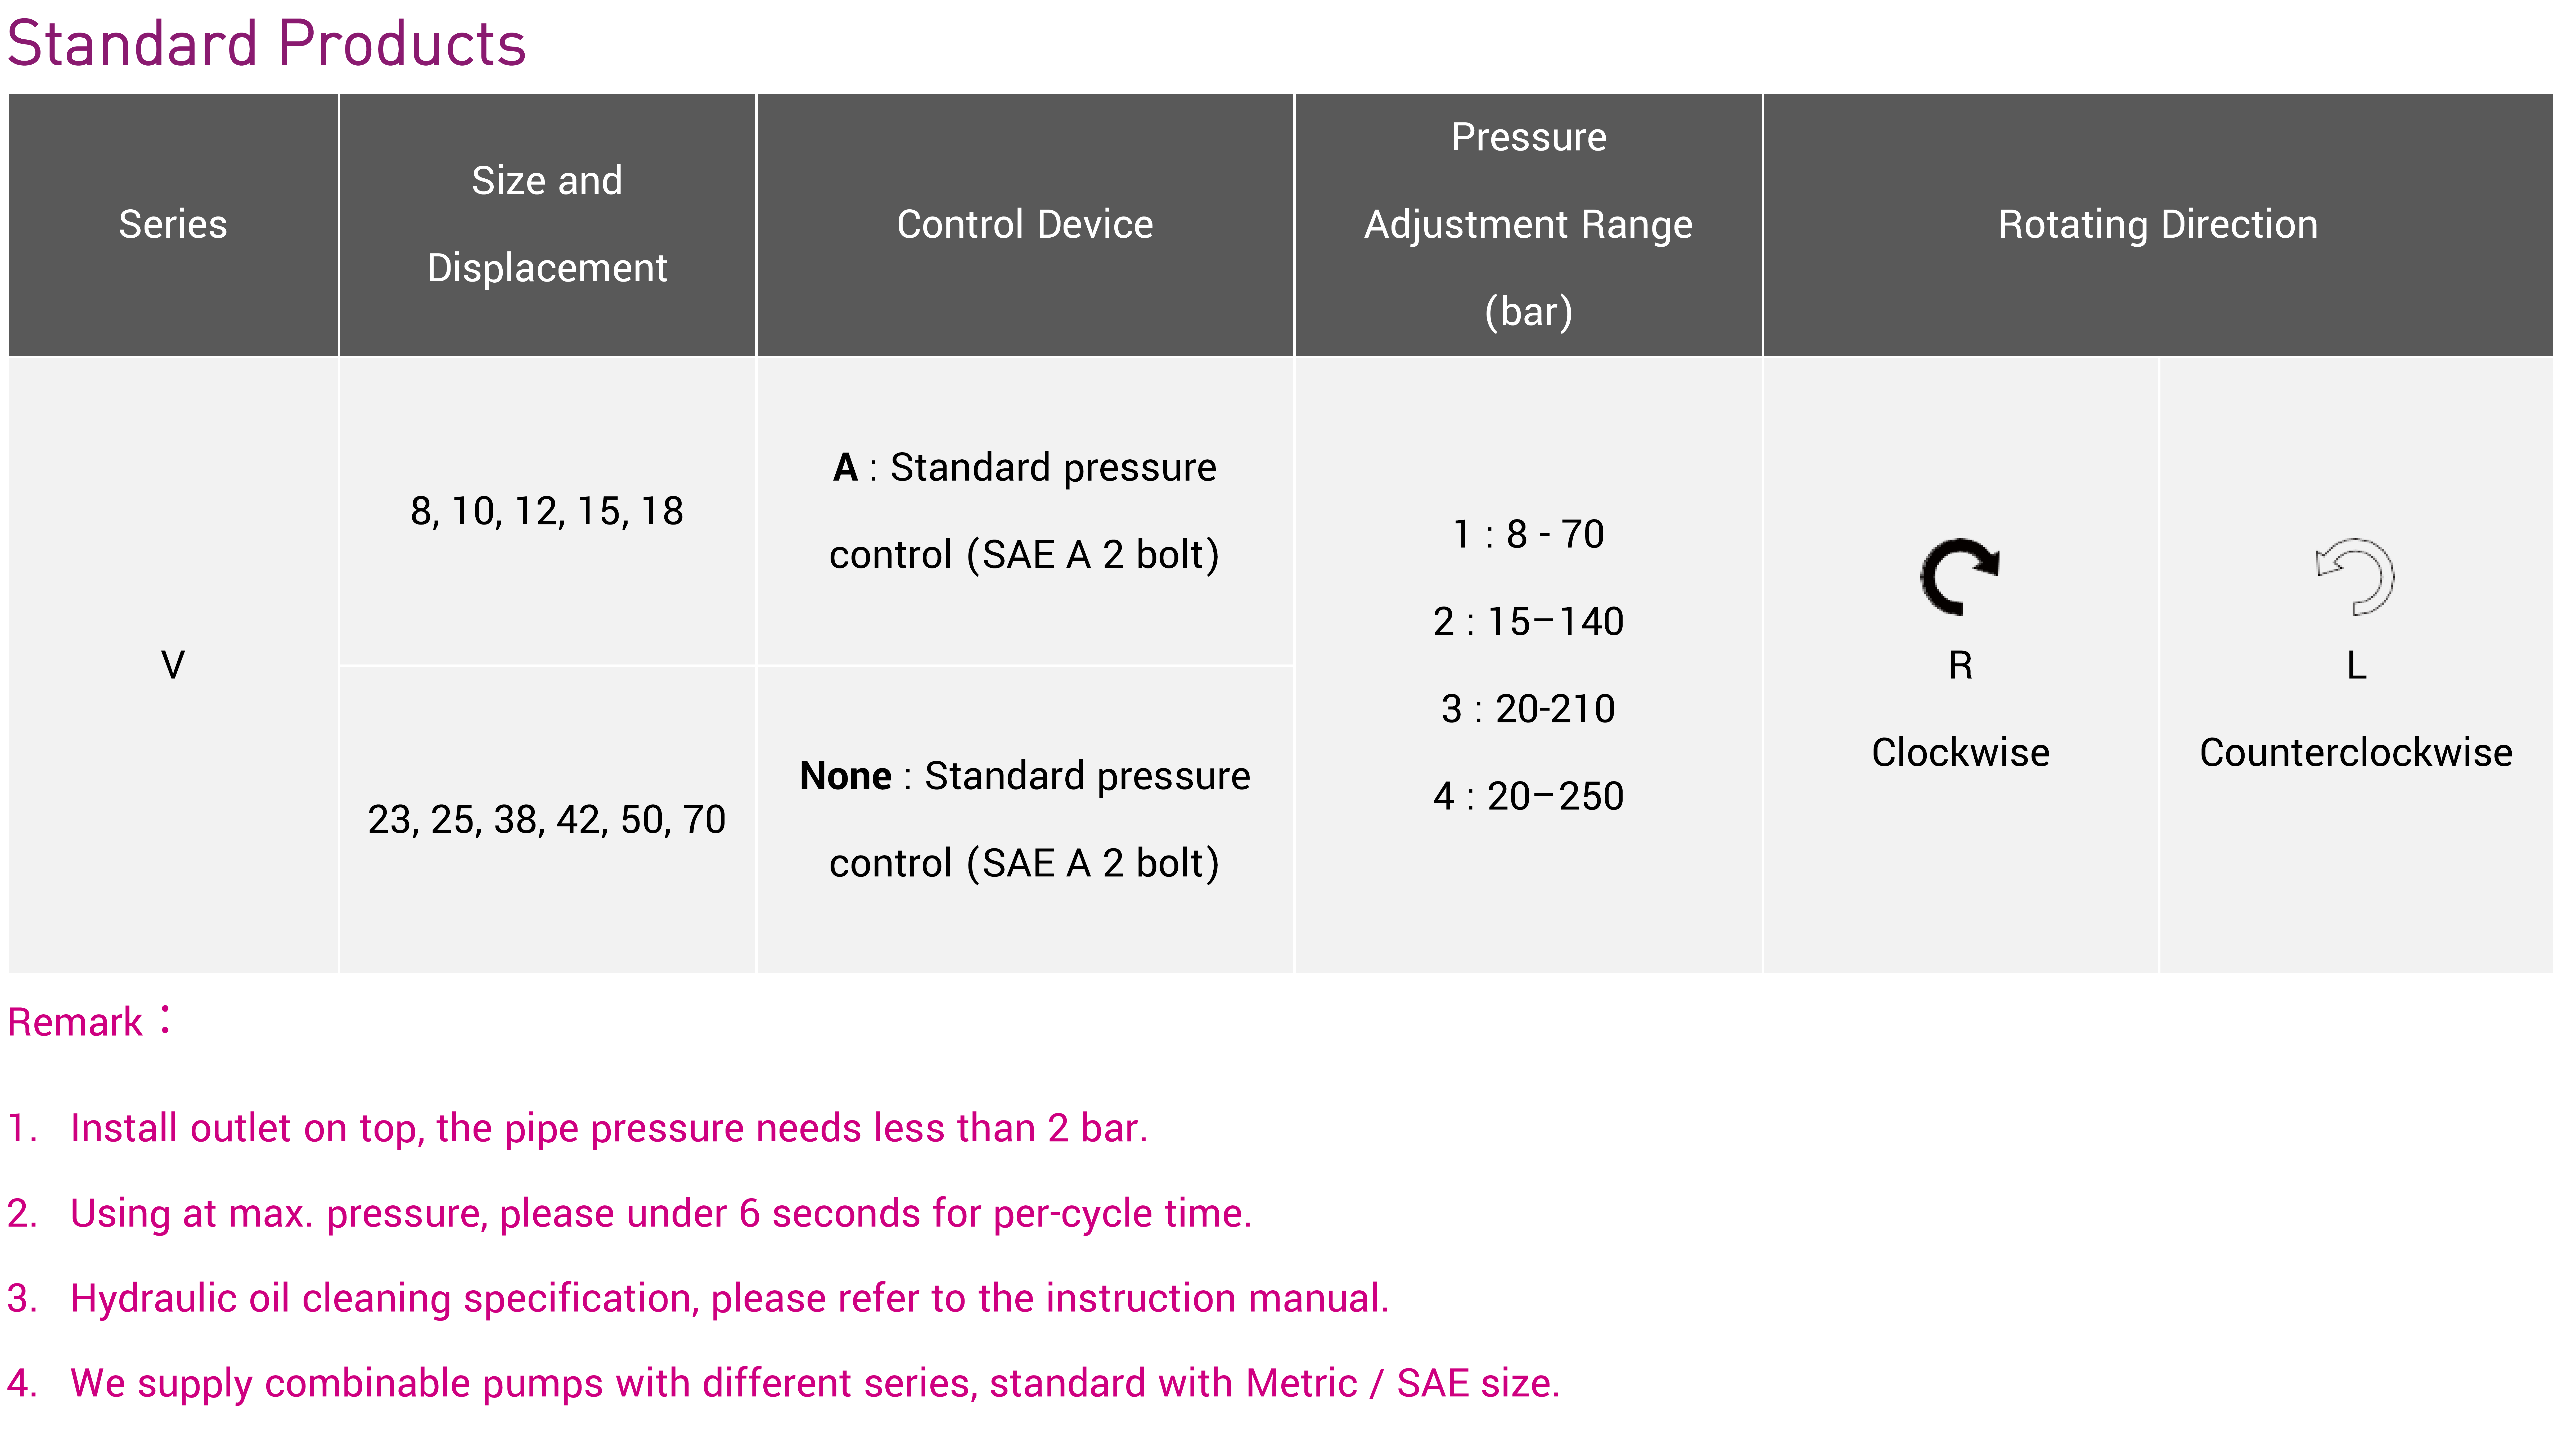 CML Код модели и описание модели для заказа осевого поршневого насоса серии V